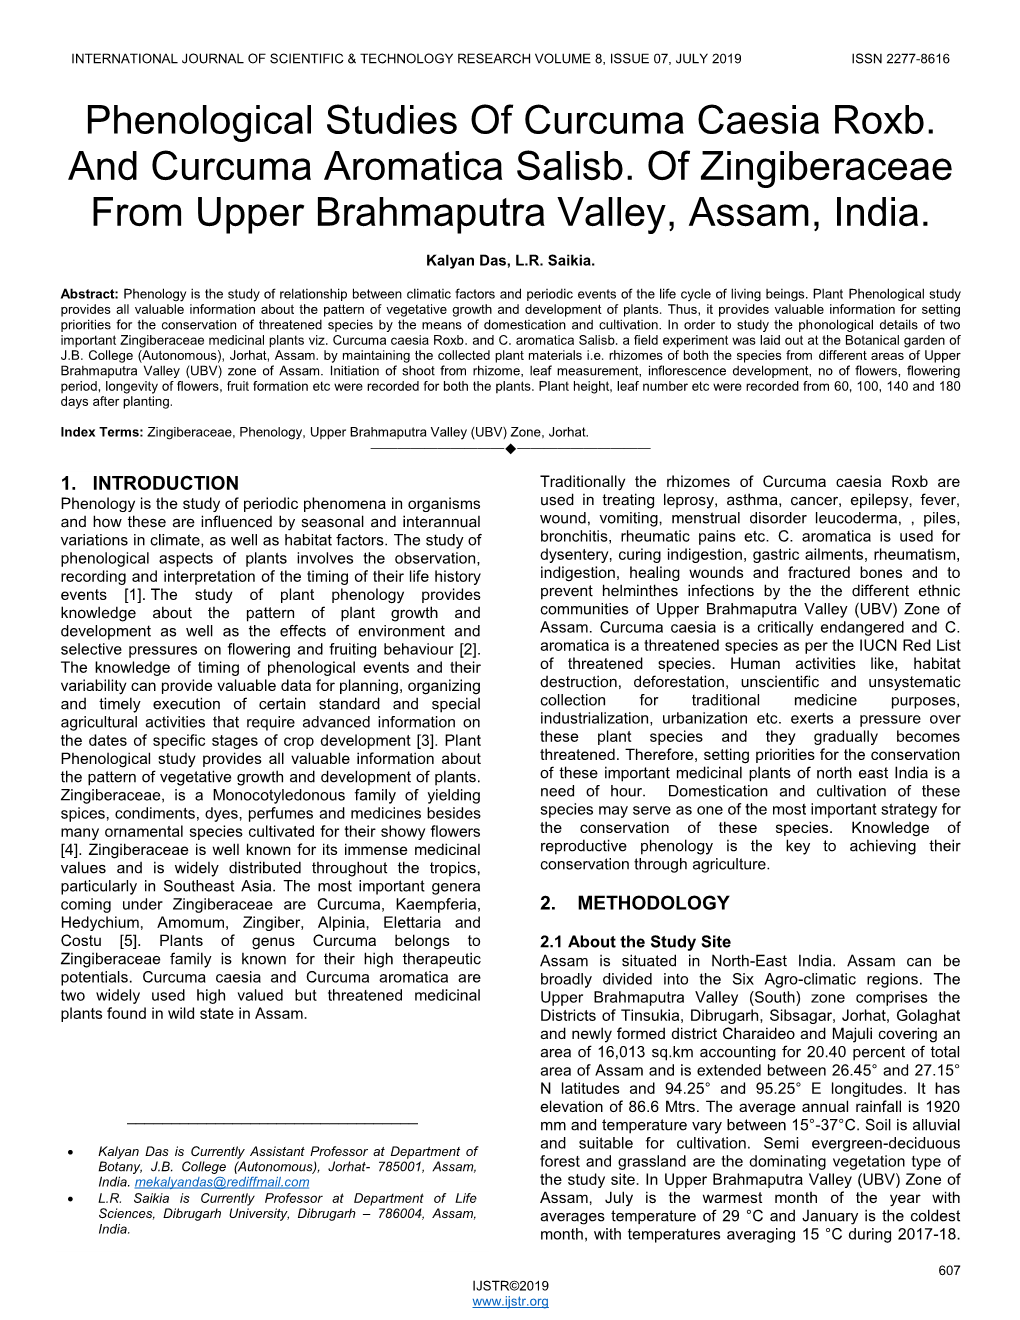 Phenological Studies of Curcuma Caesia Roxb. and Curcuma Aromatica Salisb